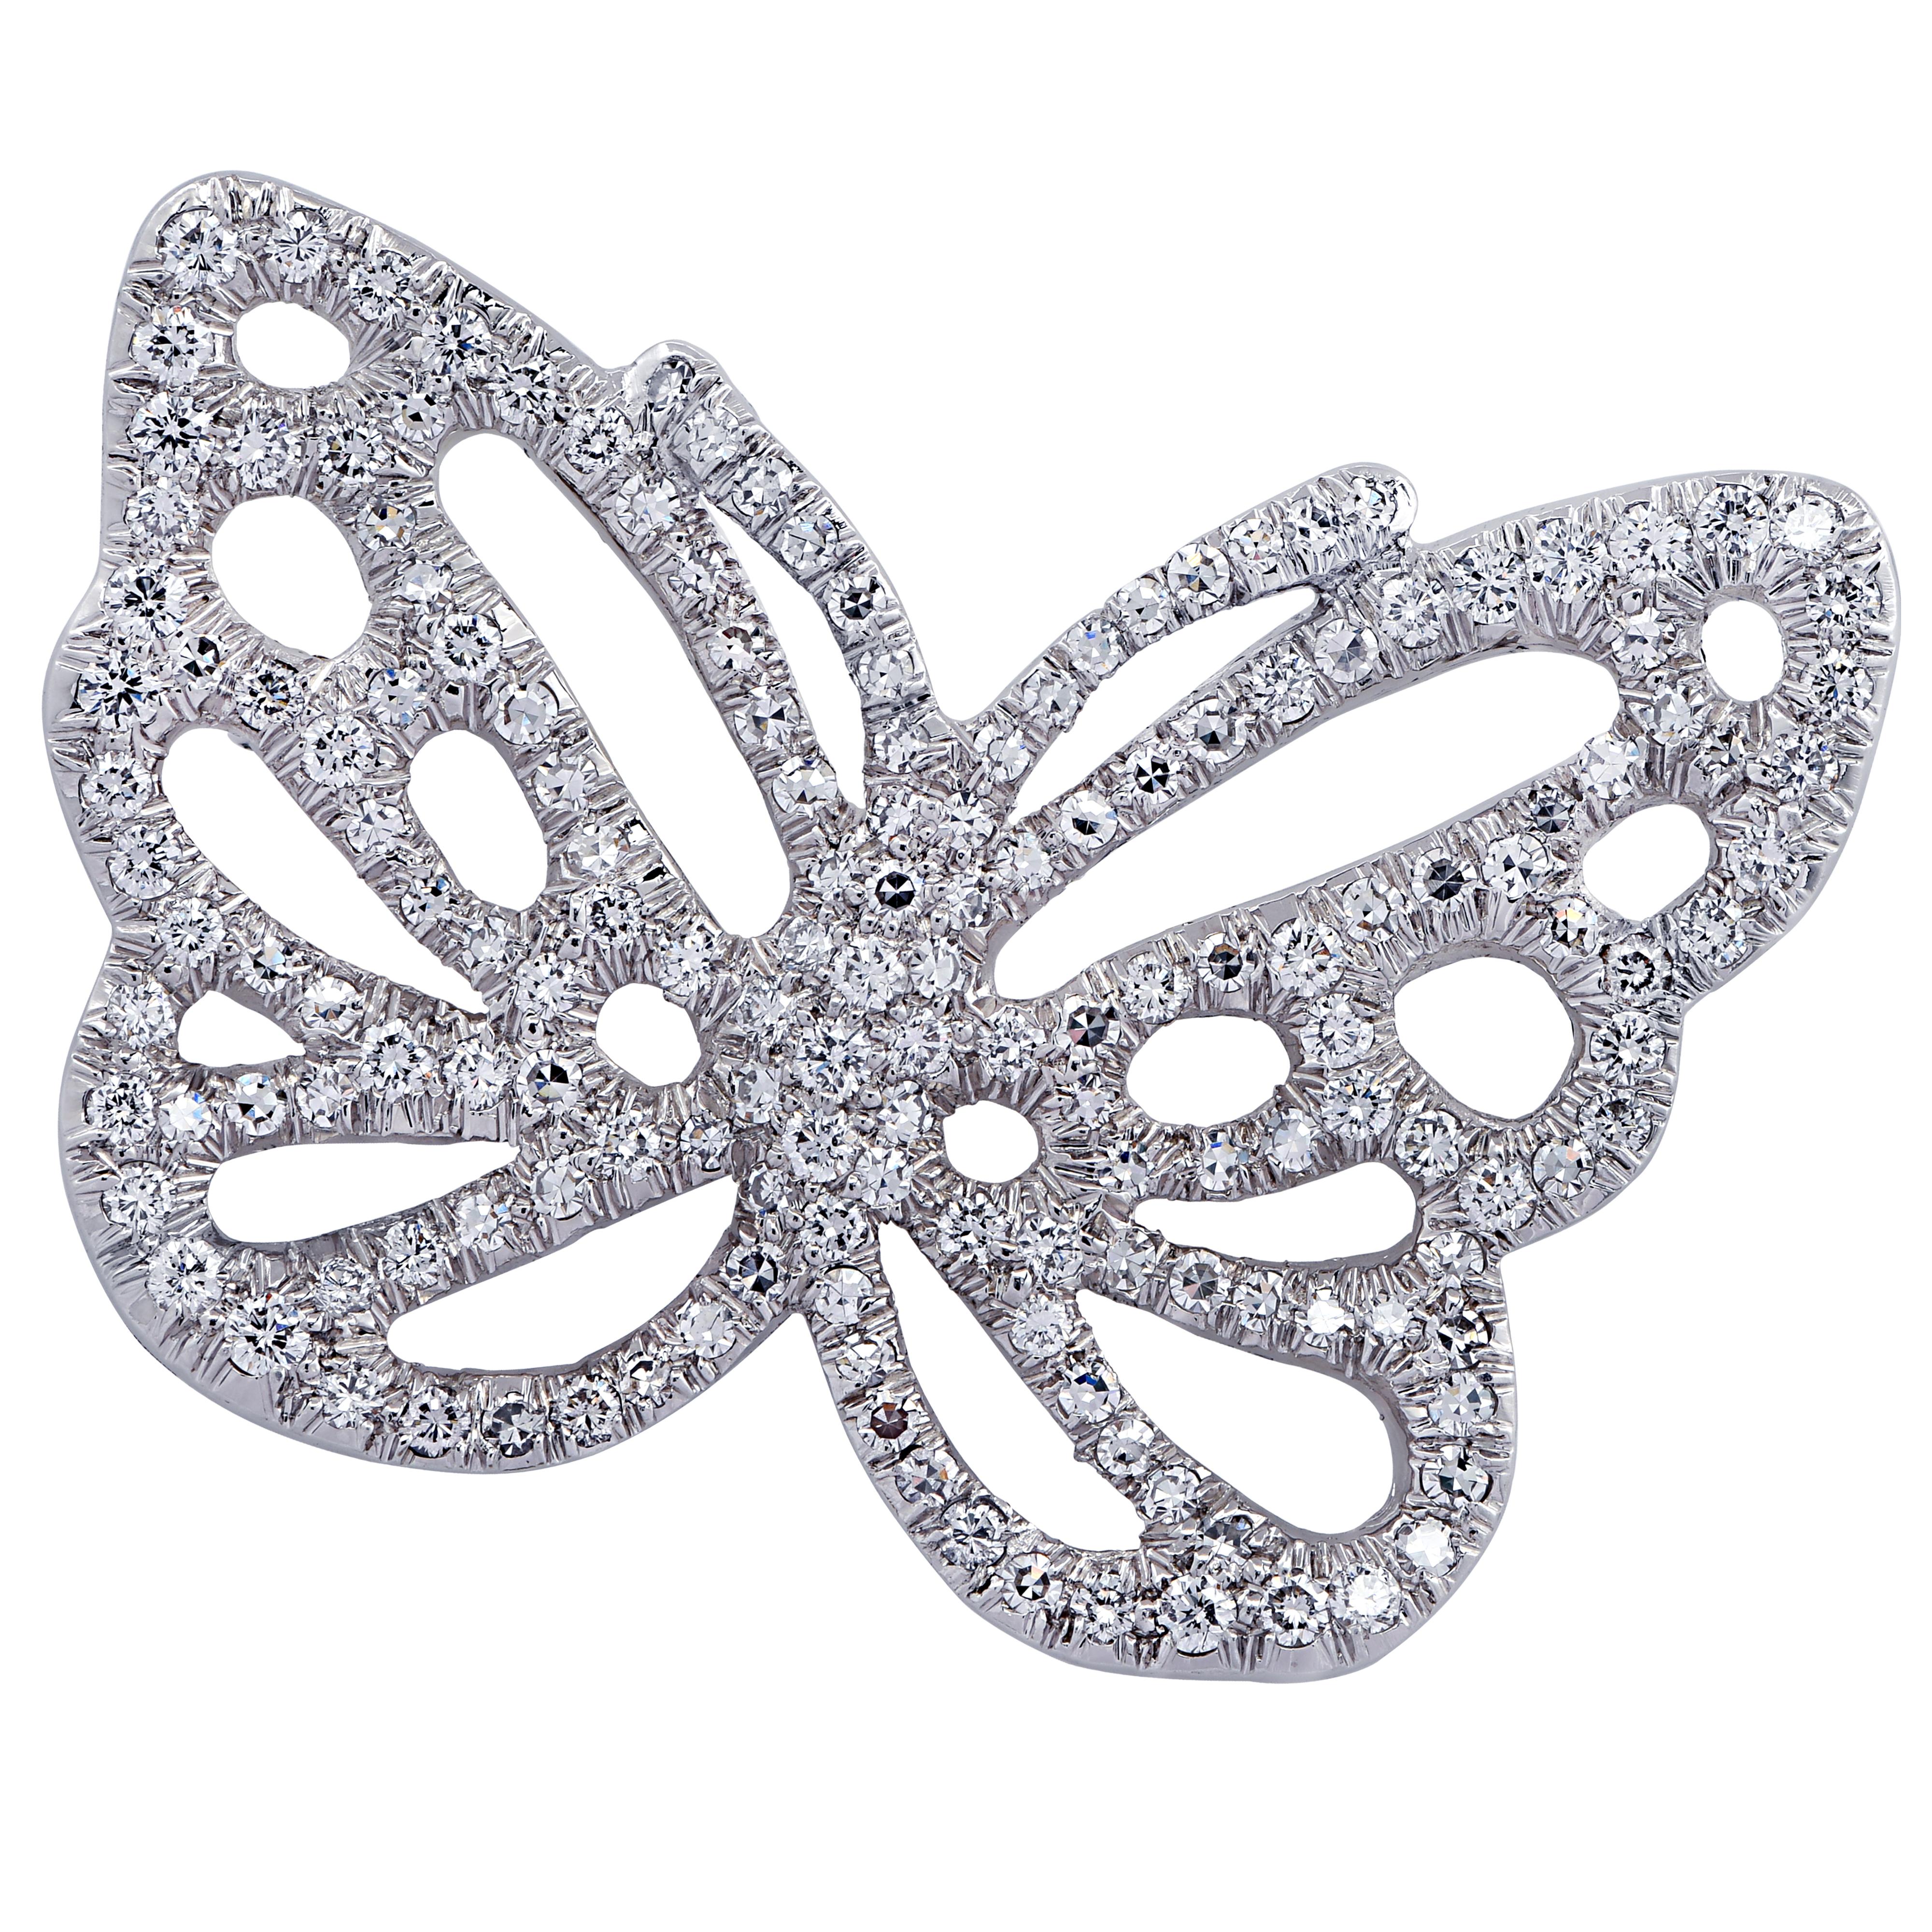 Modern Angela Cummings & Tiffany & Co. Diamond Butterfly Brooch Pin